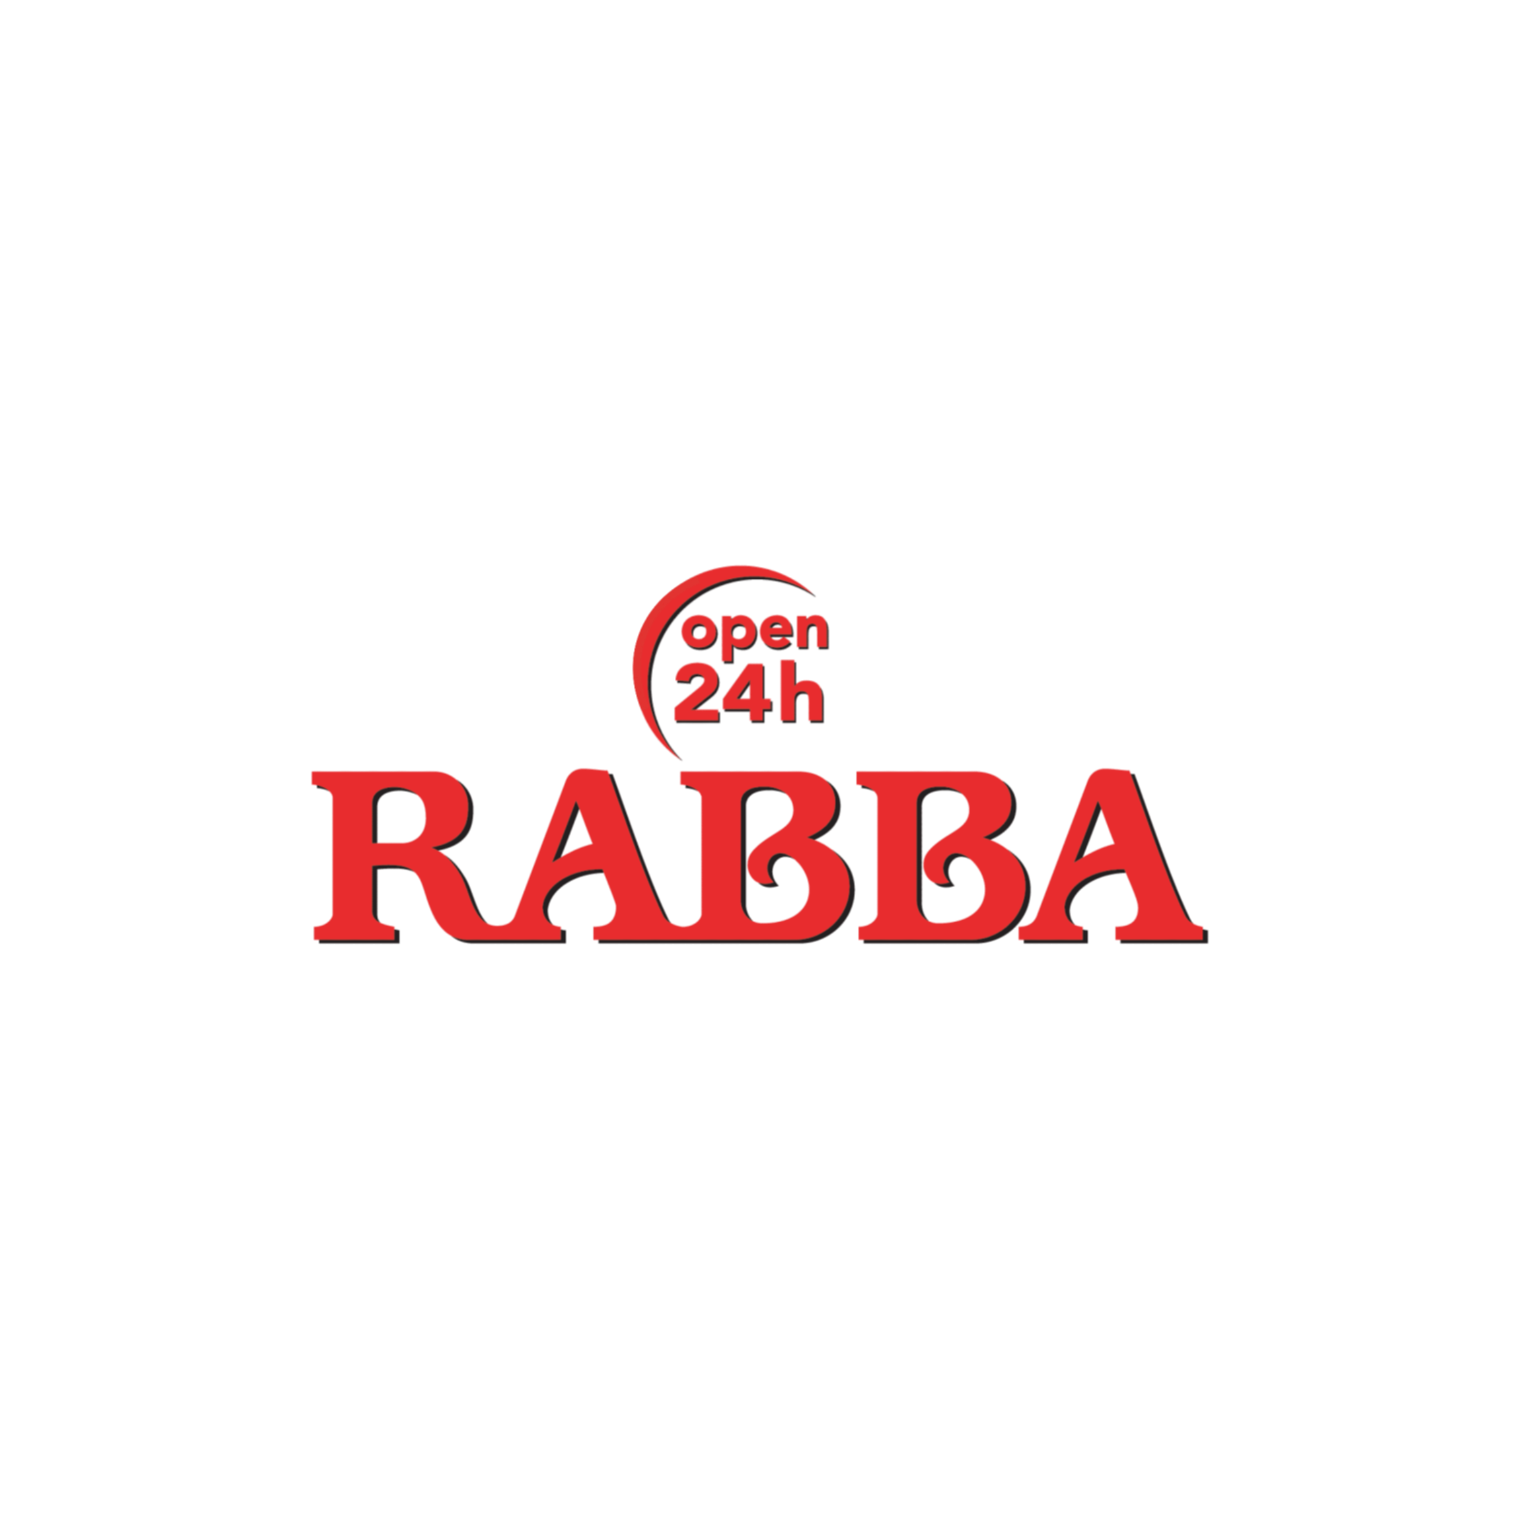 Rabba logo